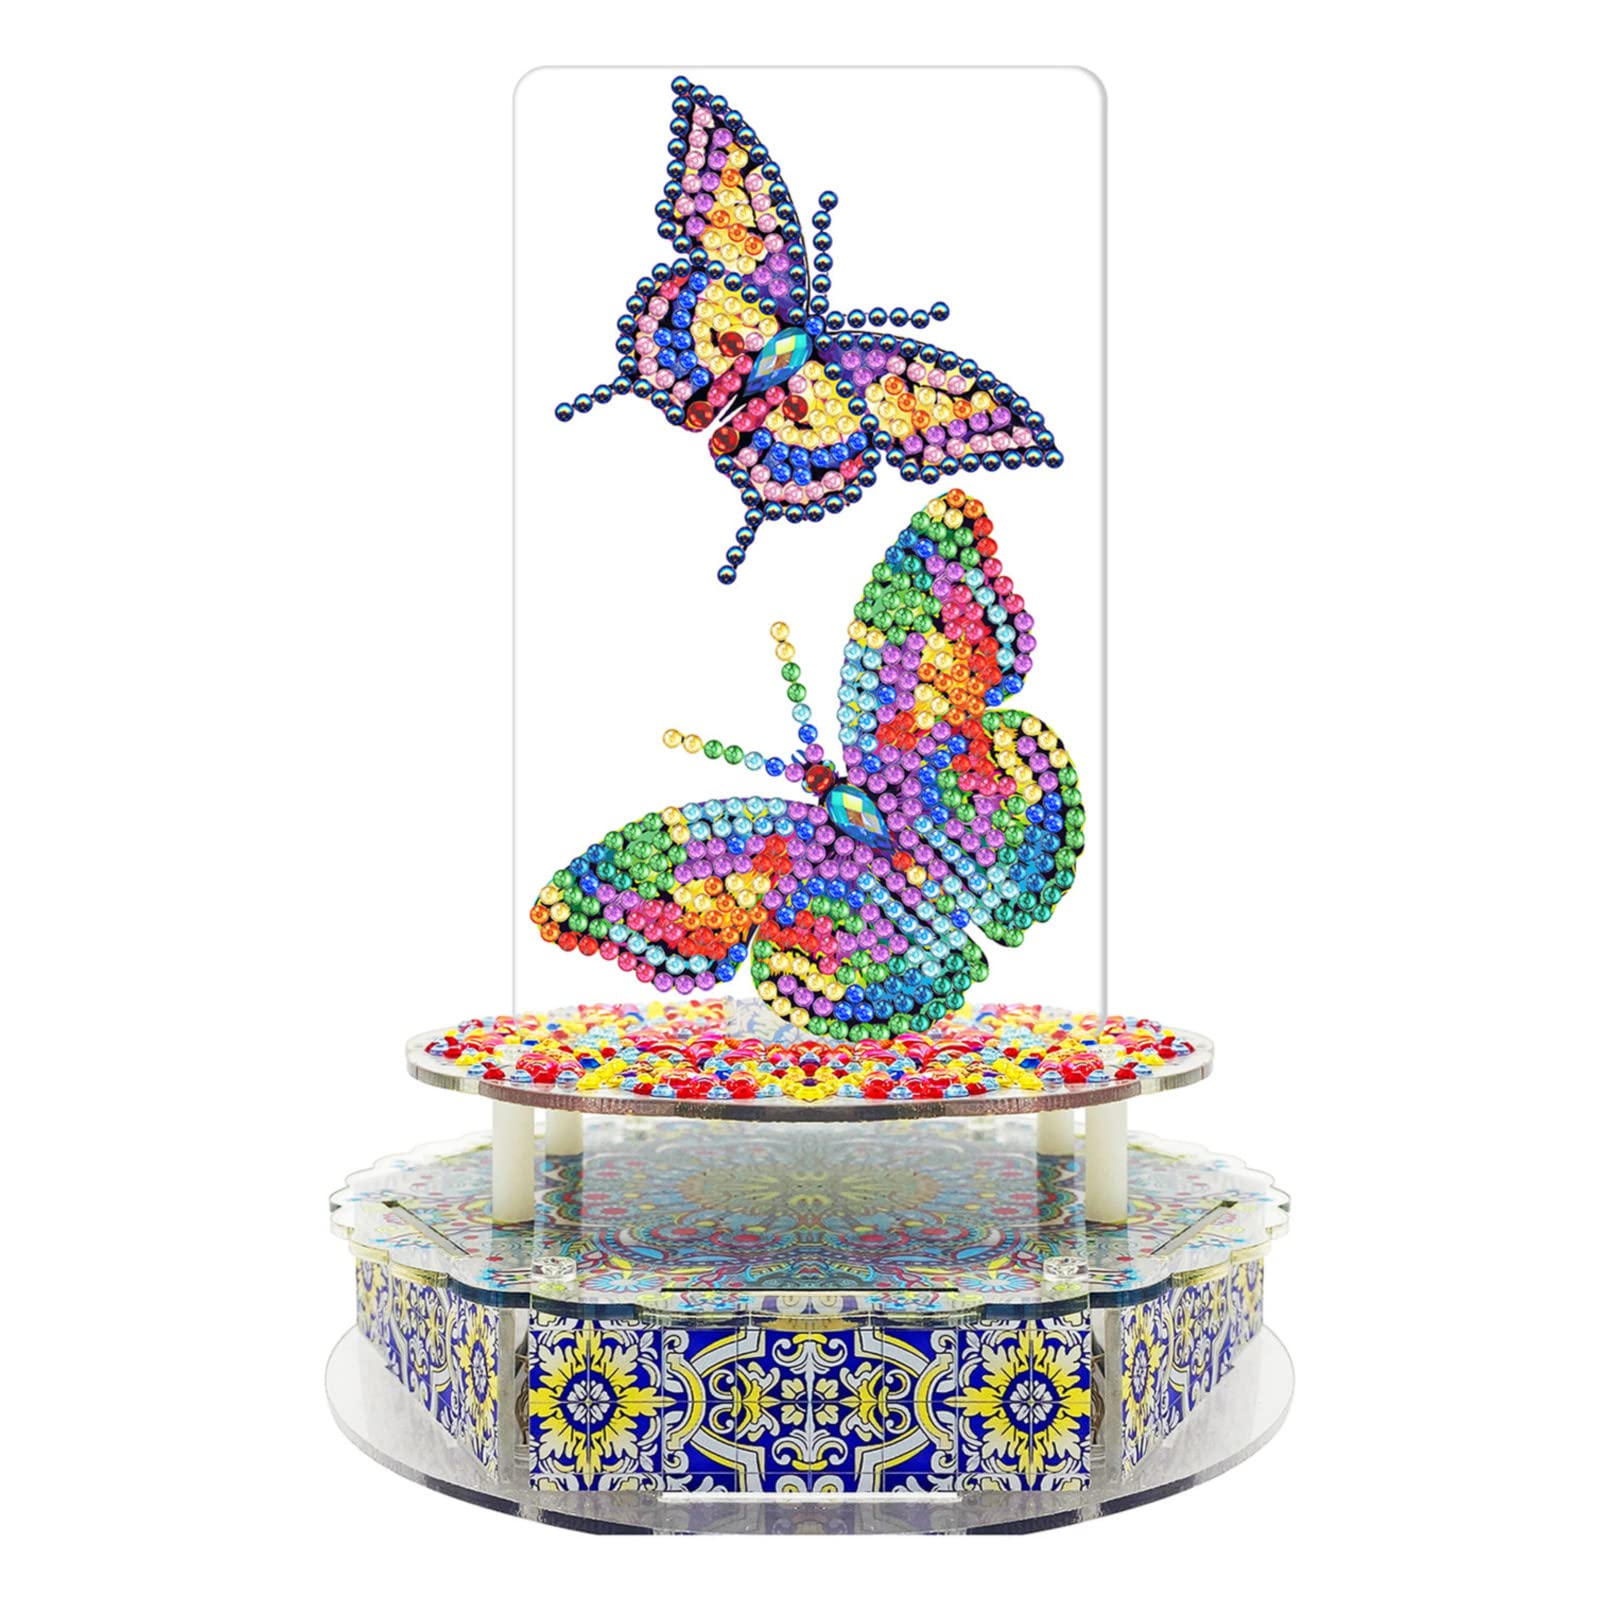 EXQUILEG Diamond Painting Musikbox, DIY 5D Eule Katze Schmetterling Tier LED Diamant Painting Bilder Tiere Strasssteine Kits mit Zubehör Diamantzeichnung Mosaikherstellung Home Decor (#4)